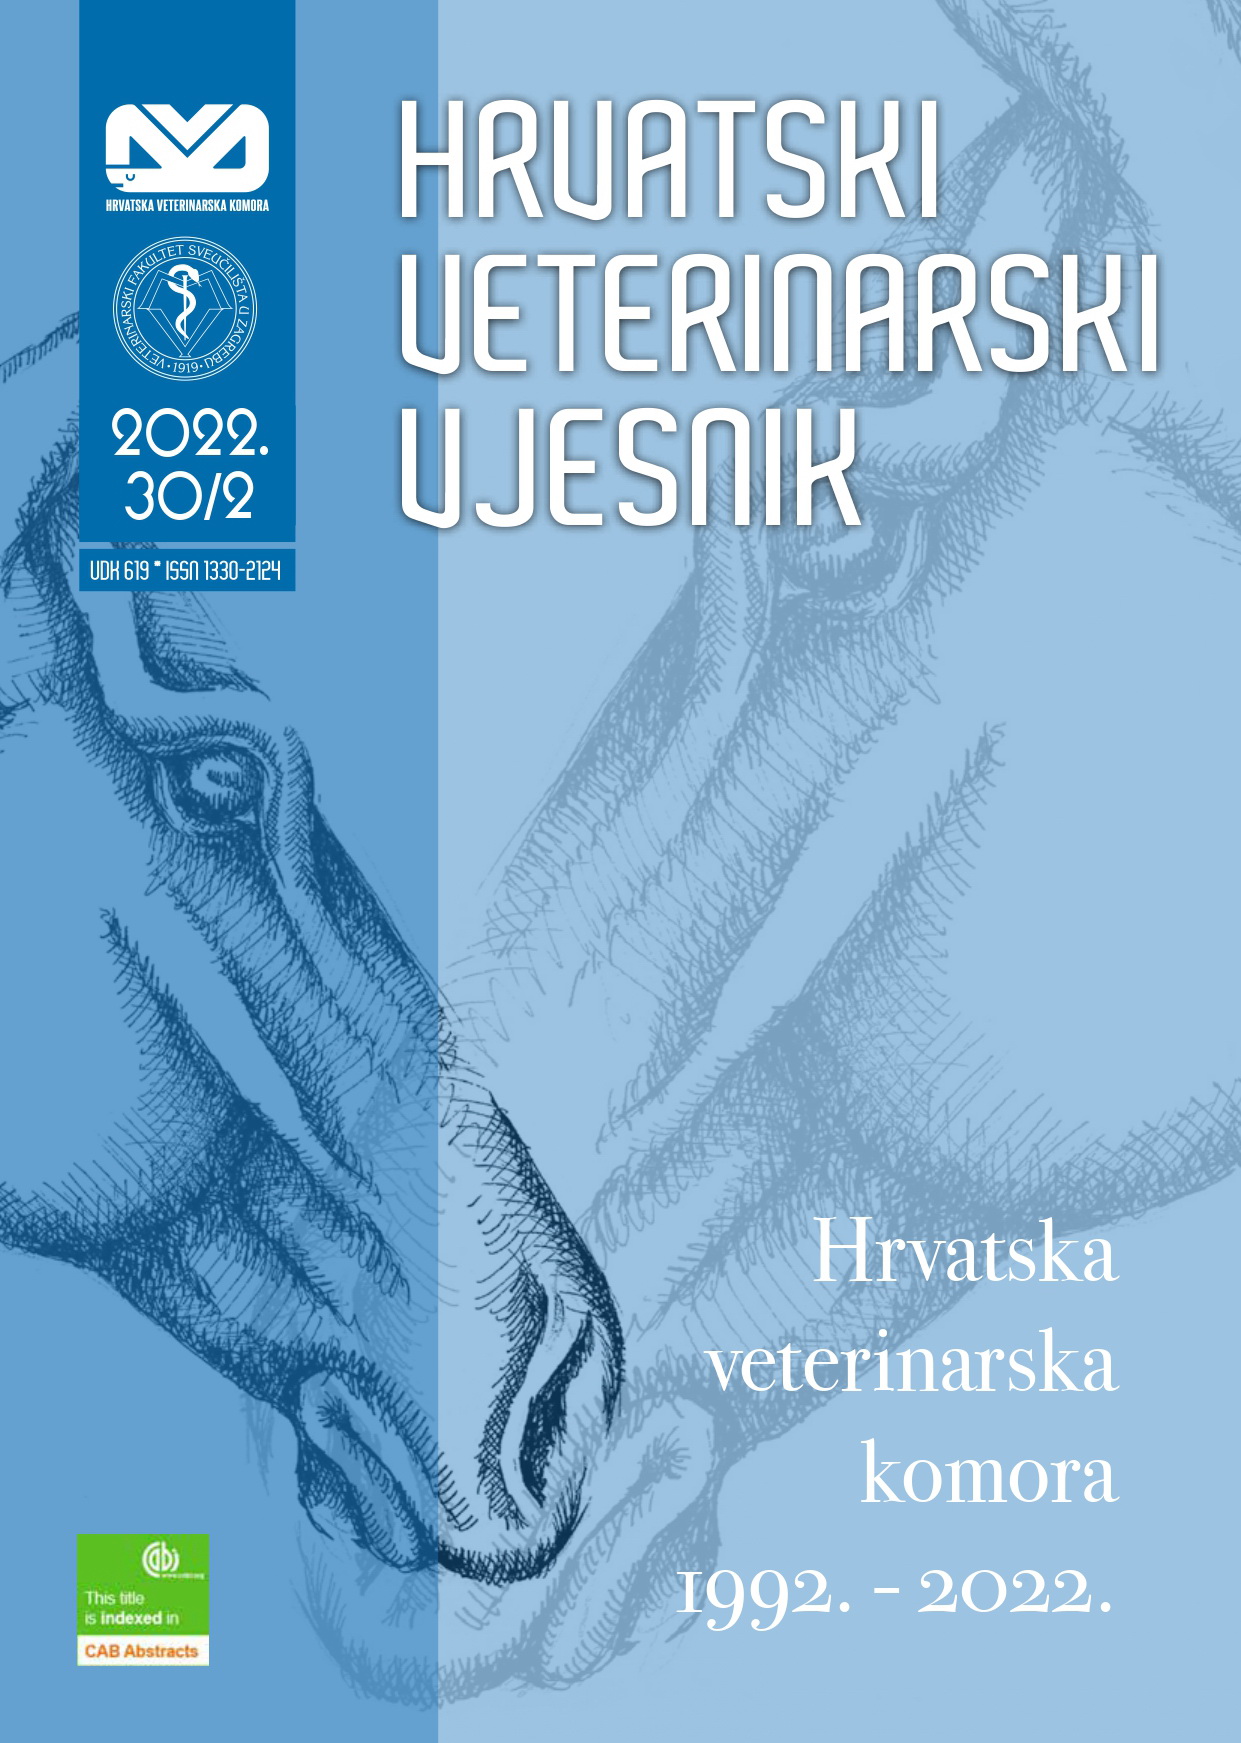 logo Hrvatski veterinarski vjesnik